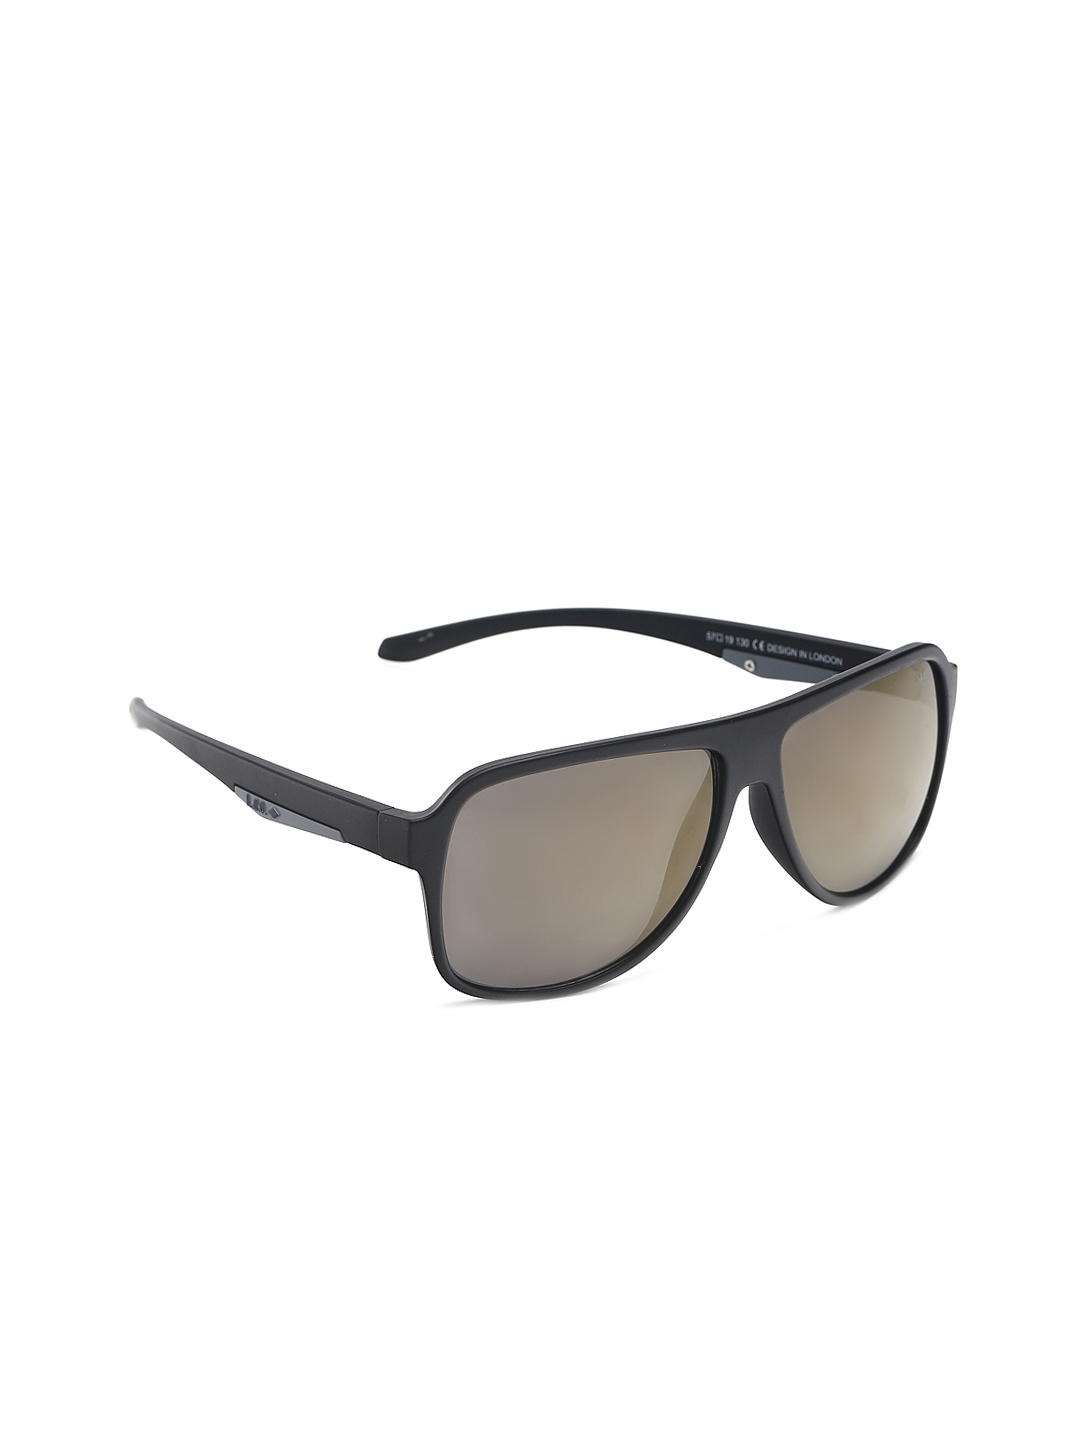 Buy Lee Cooper Originals Men Sunglasses LC9060 - Sunglasses for Men ...